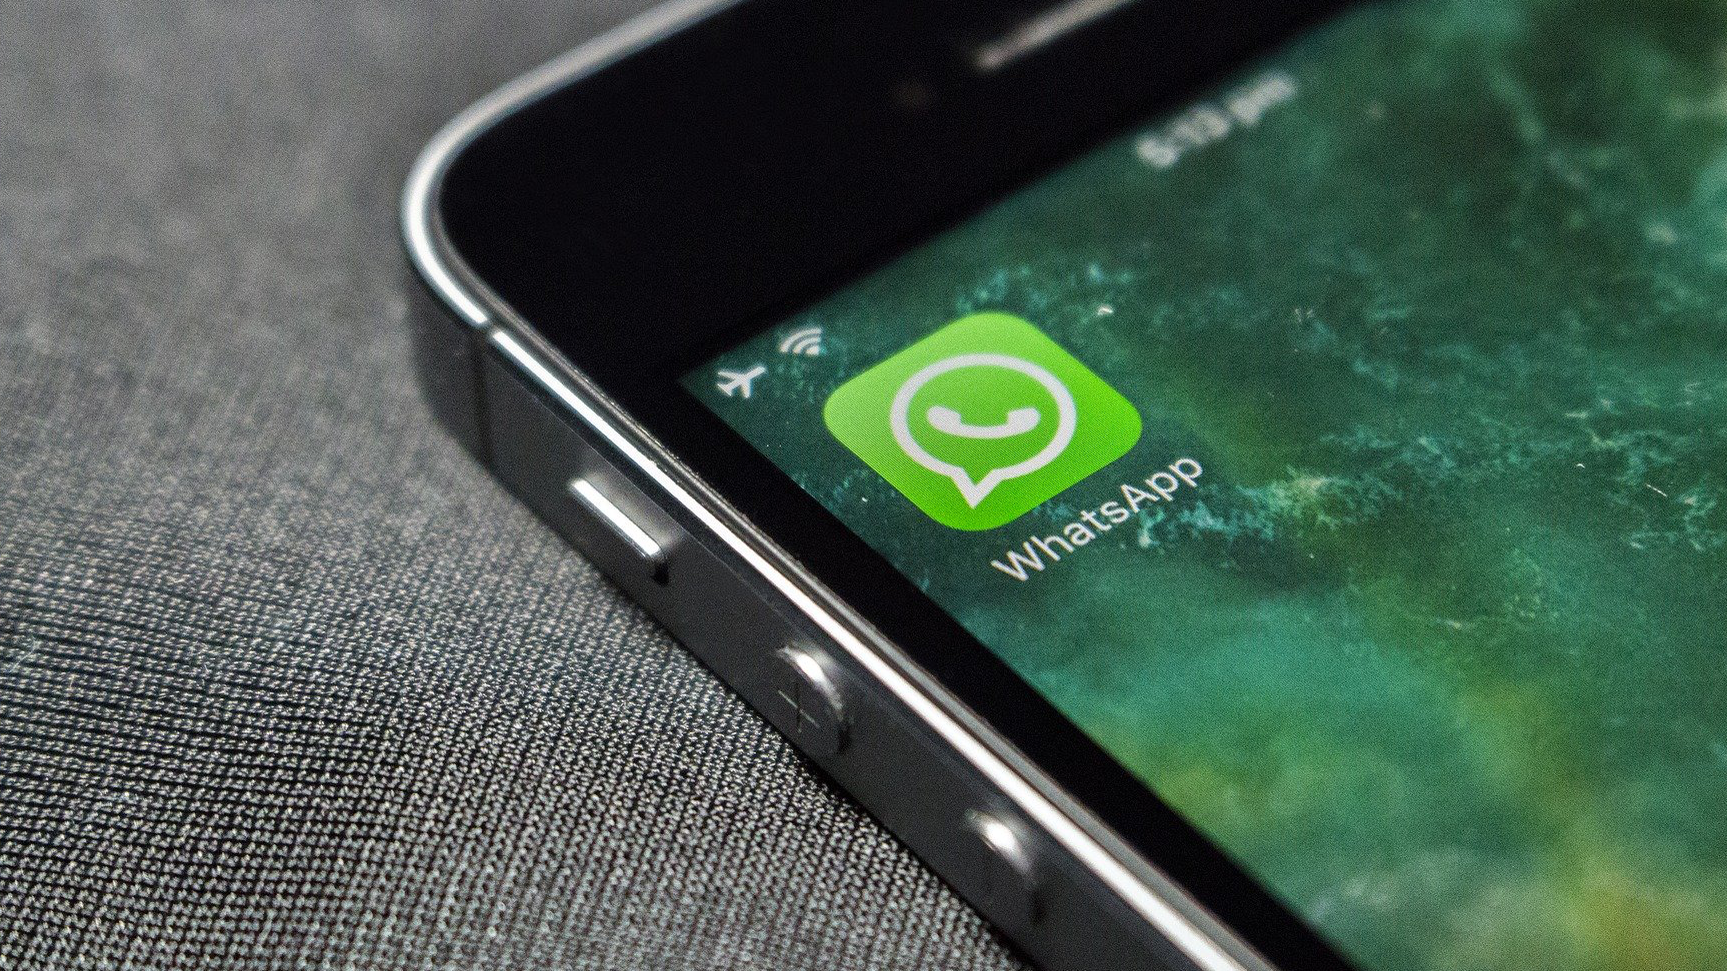 5 Apps de Figurinhas para WhatsApp no iOS em 2021